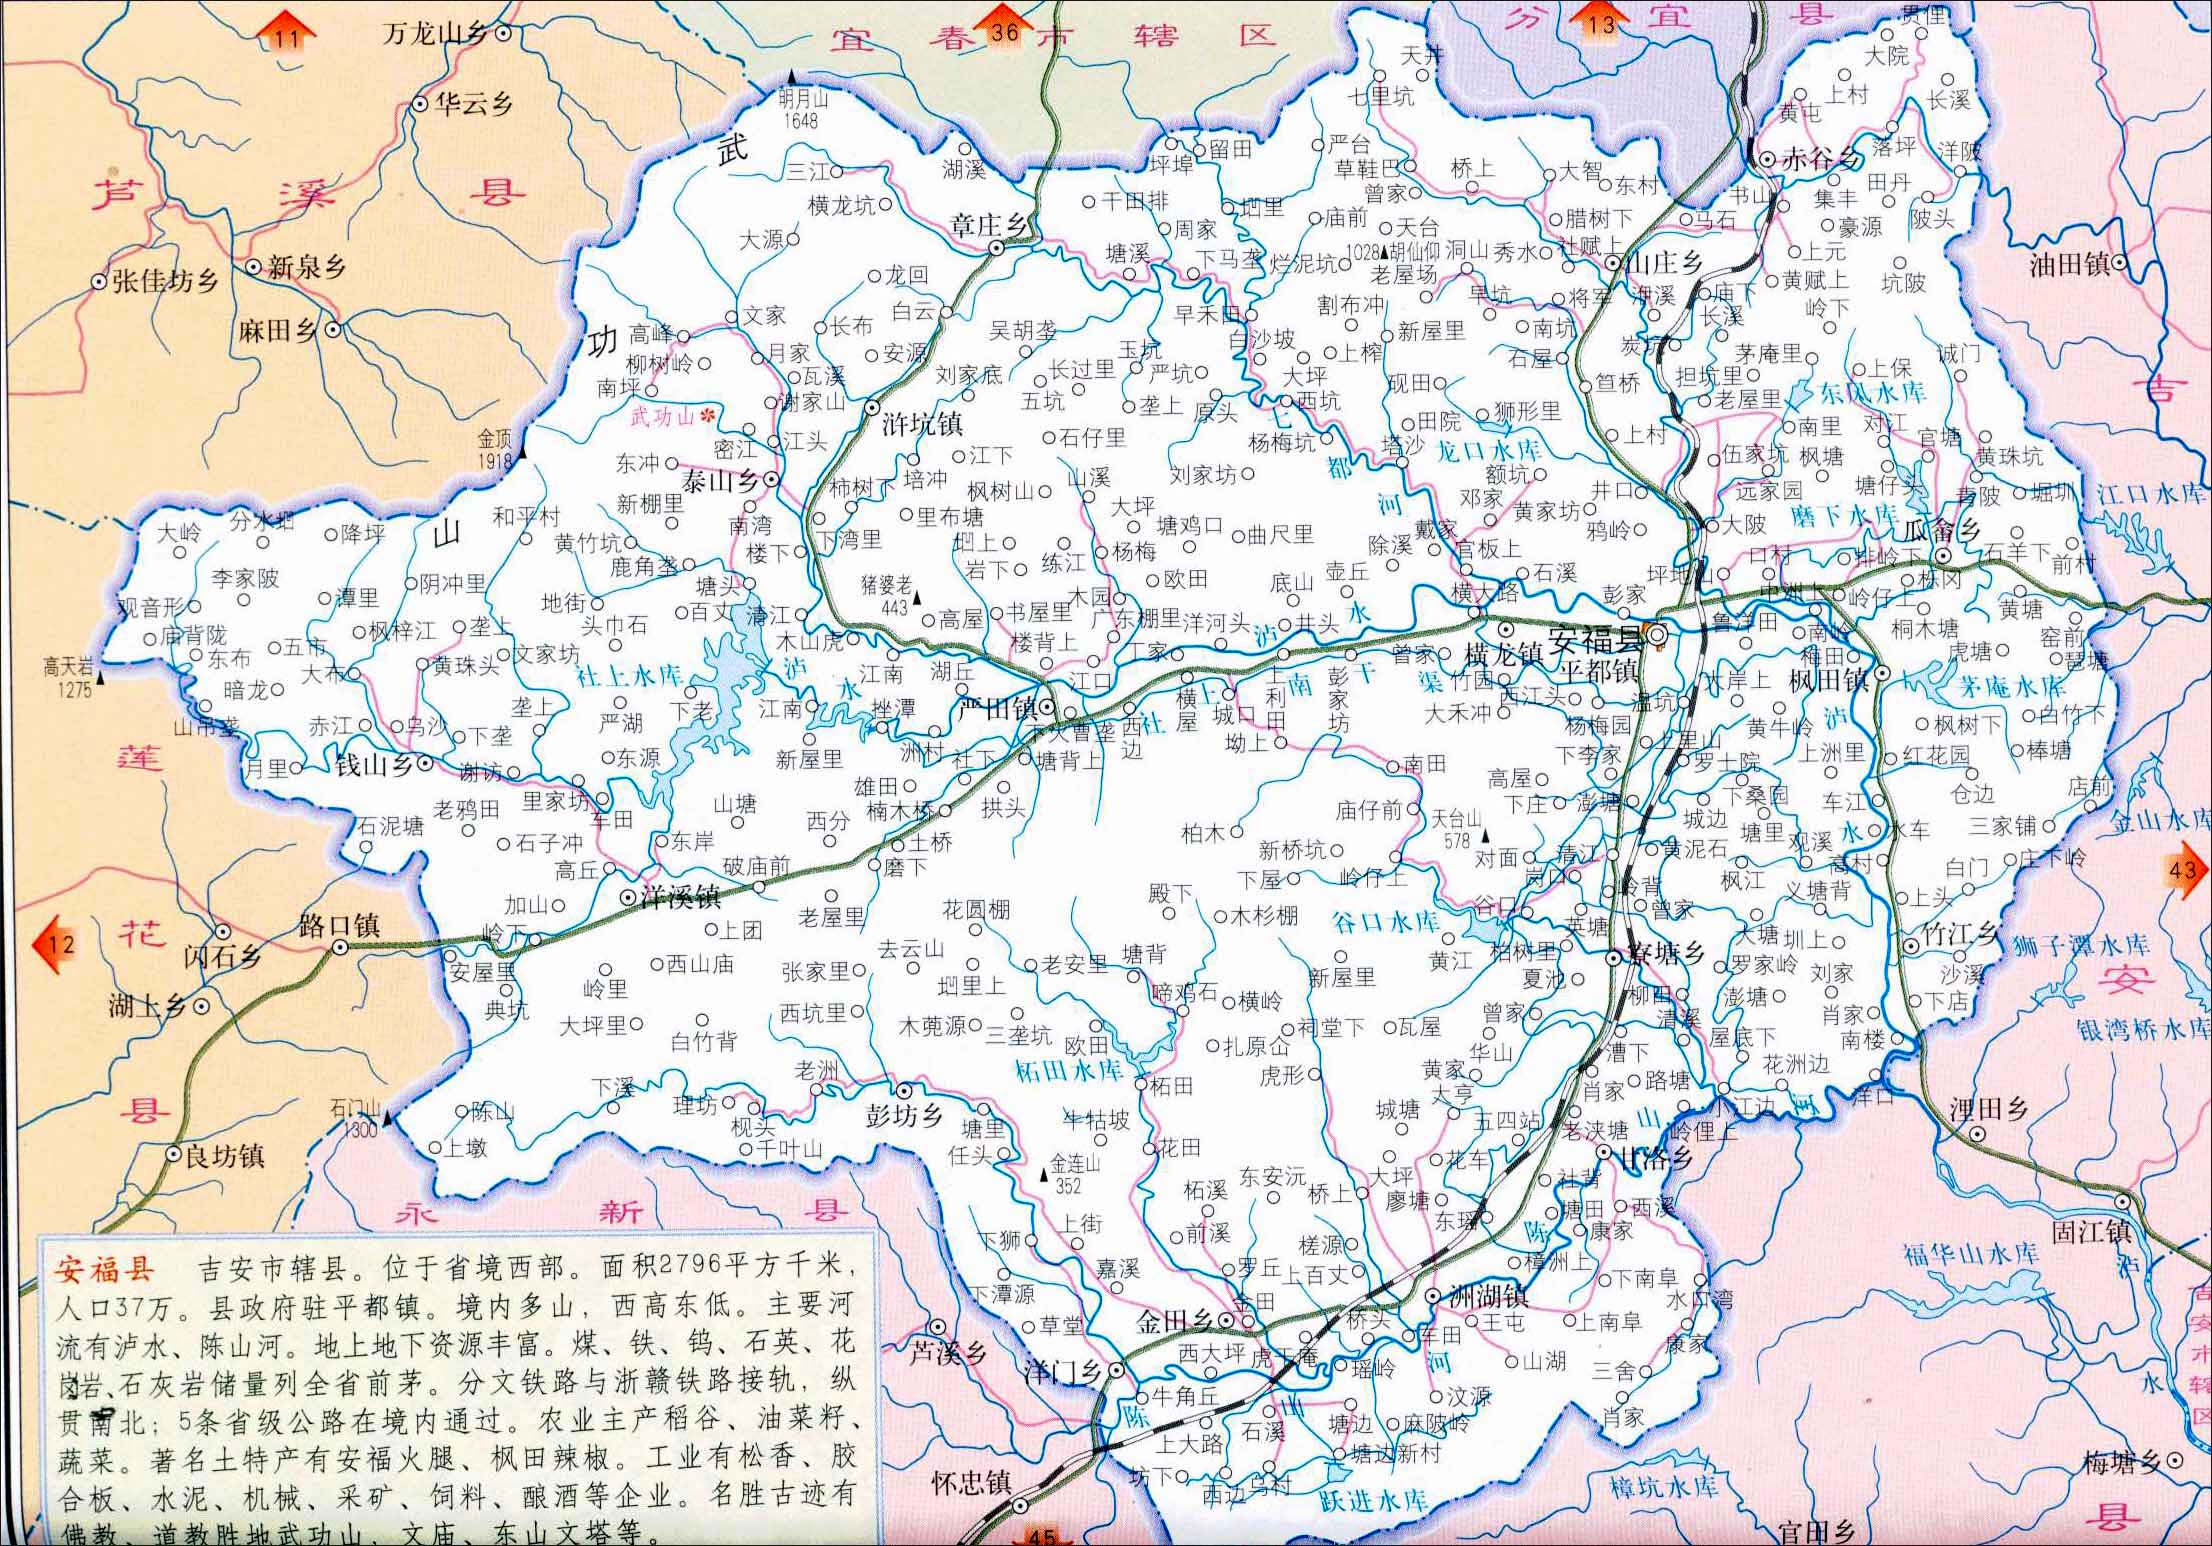 本文江西吉安市5县区位如图所示万安,安福等5县的地形如图所示